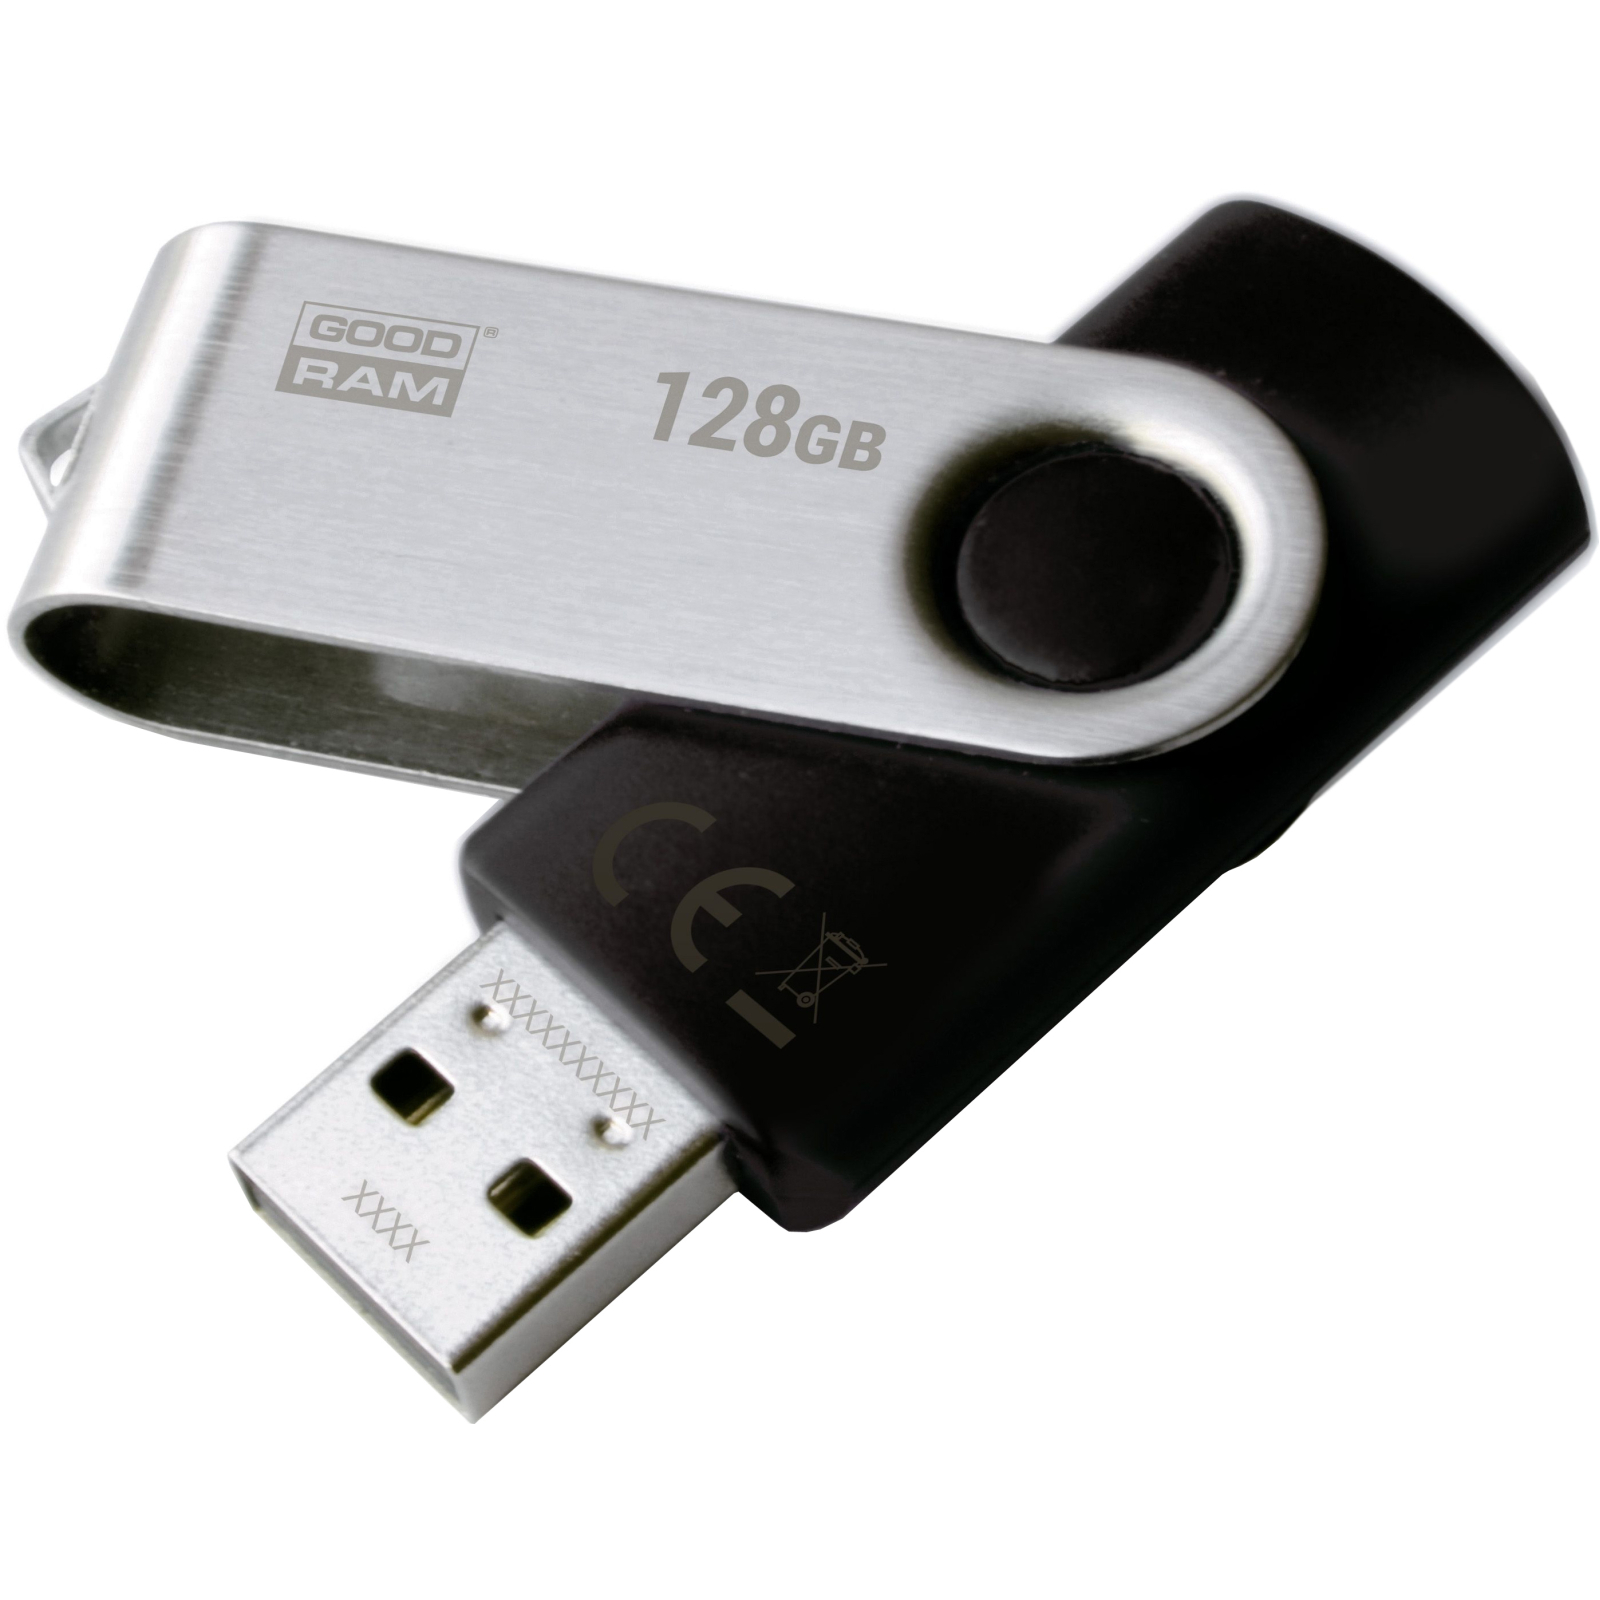 USB флеш накопитель Goodram 8GB Twister Black USB 2.0 (UTS2-0080K0R11)